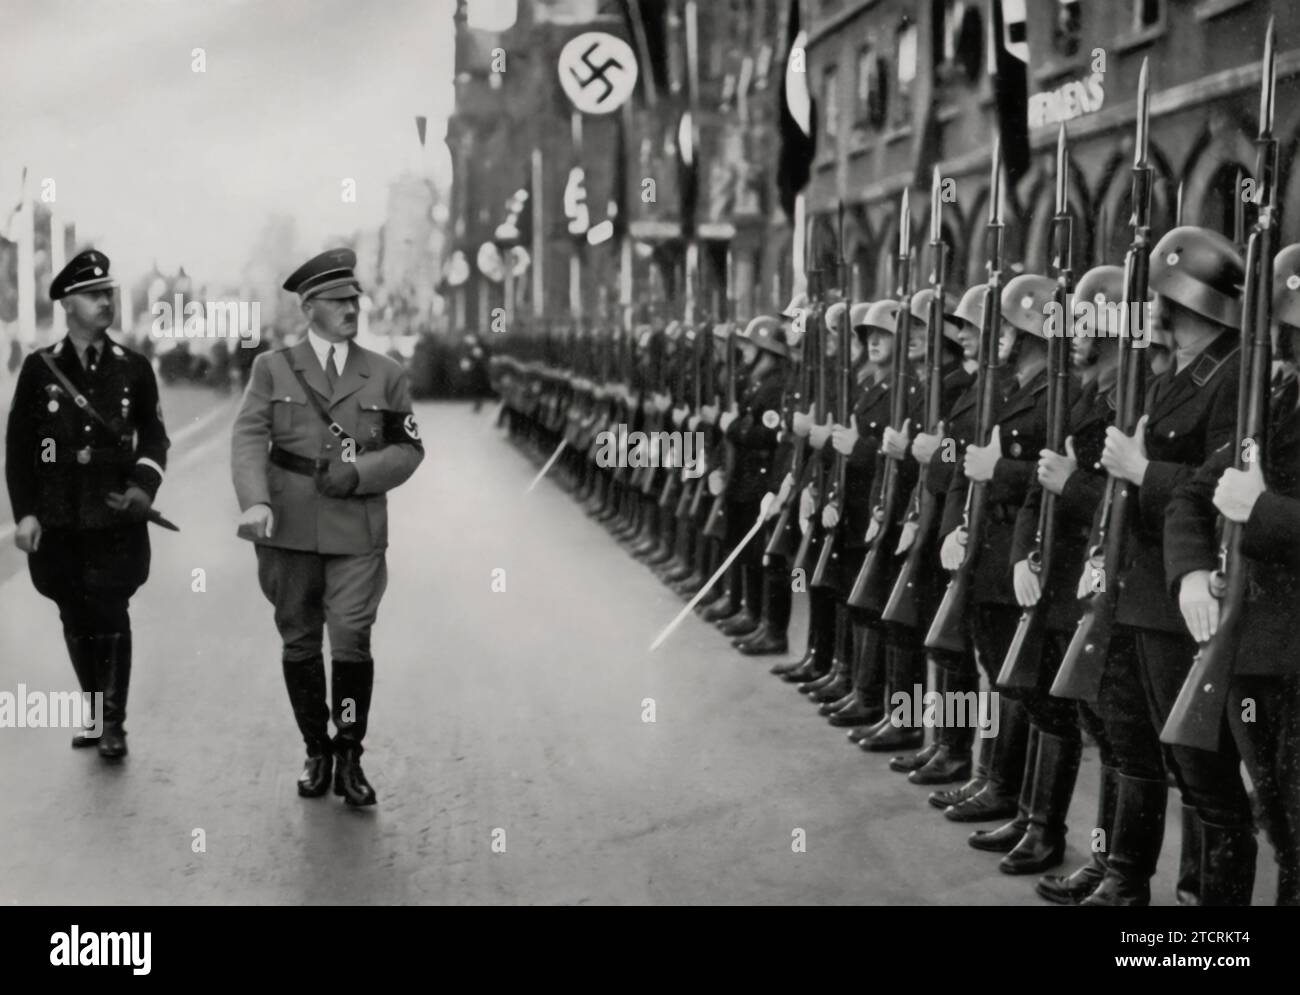 Während des Parteitags der Freiheit wird Adolf Hitler die Ehrenkompanie seiner Leibstandarte inspiziert. Dieser Moment erfasst den rituellen Aspekt der Kundgebungen der Nazi-Partei, bei denen Hitlers Inspektion seiner Elitetruppen die Themen Loyalität und militärische Präzision unterstrich. Die Rolle der Leibstandarte bei diesen Zeremonien war ein Symbol für die enge Verbindung zwischen Hitler und seiner persönlichen Garde, die ihre Bedeutung innerhalb der Nazi-Machtstruktur widerspiegelt. Stockfoto